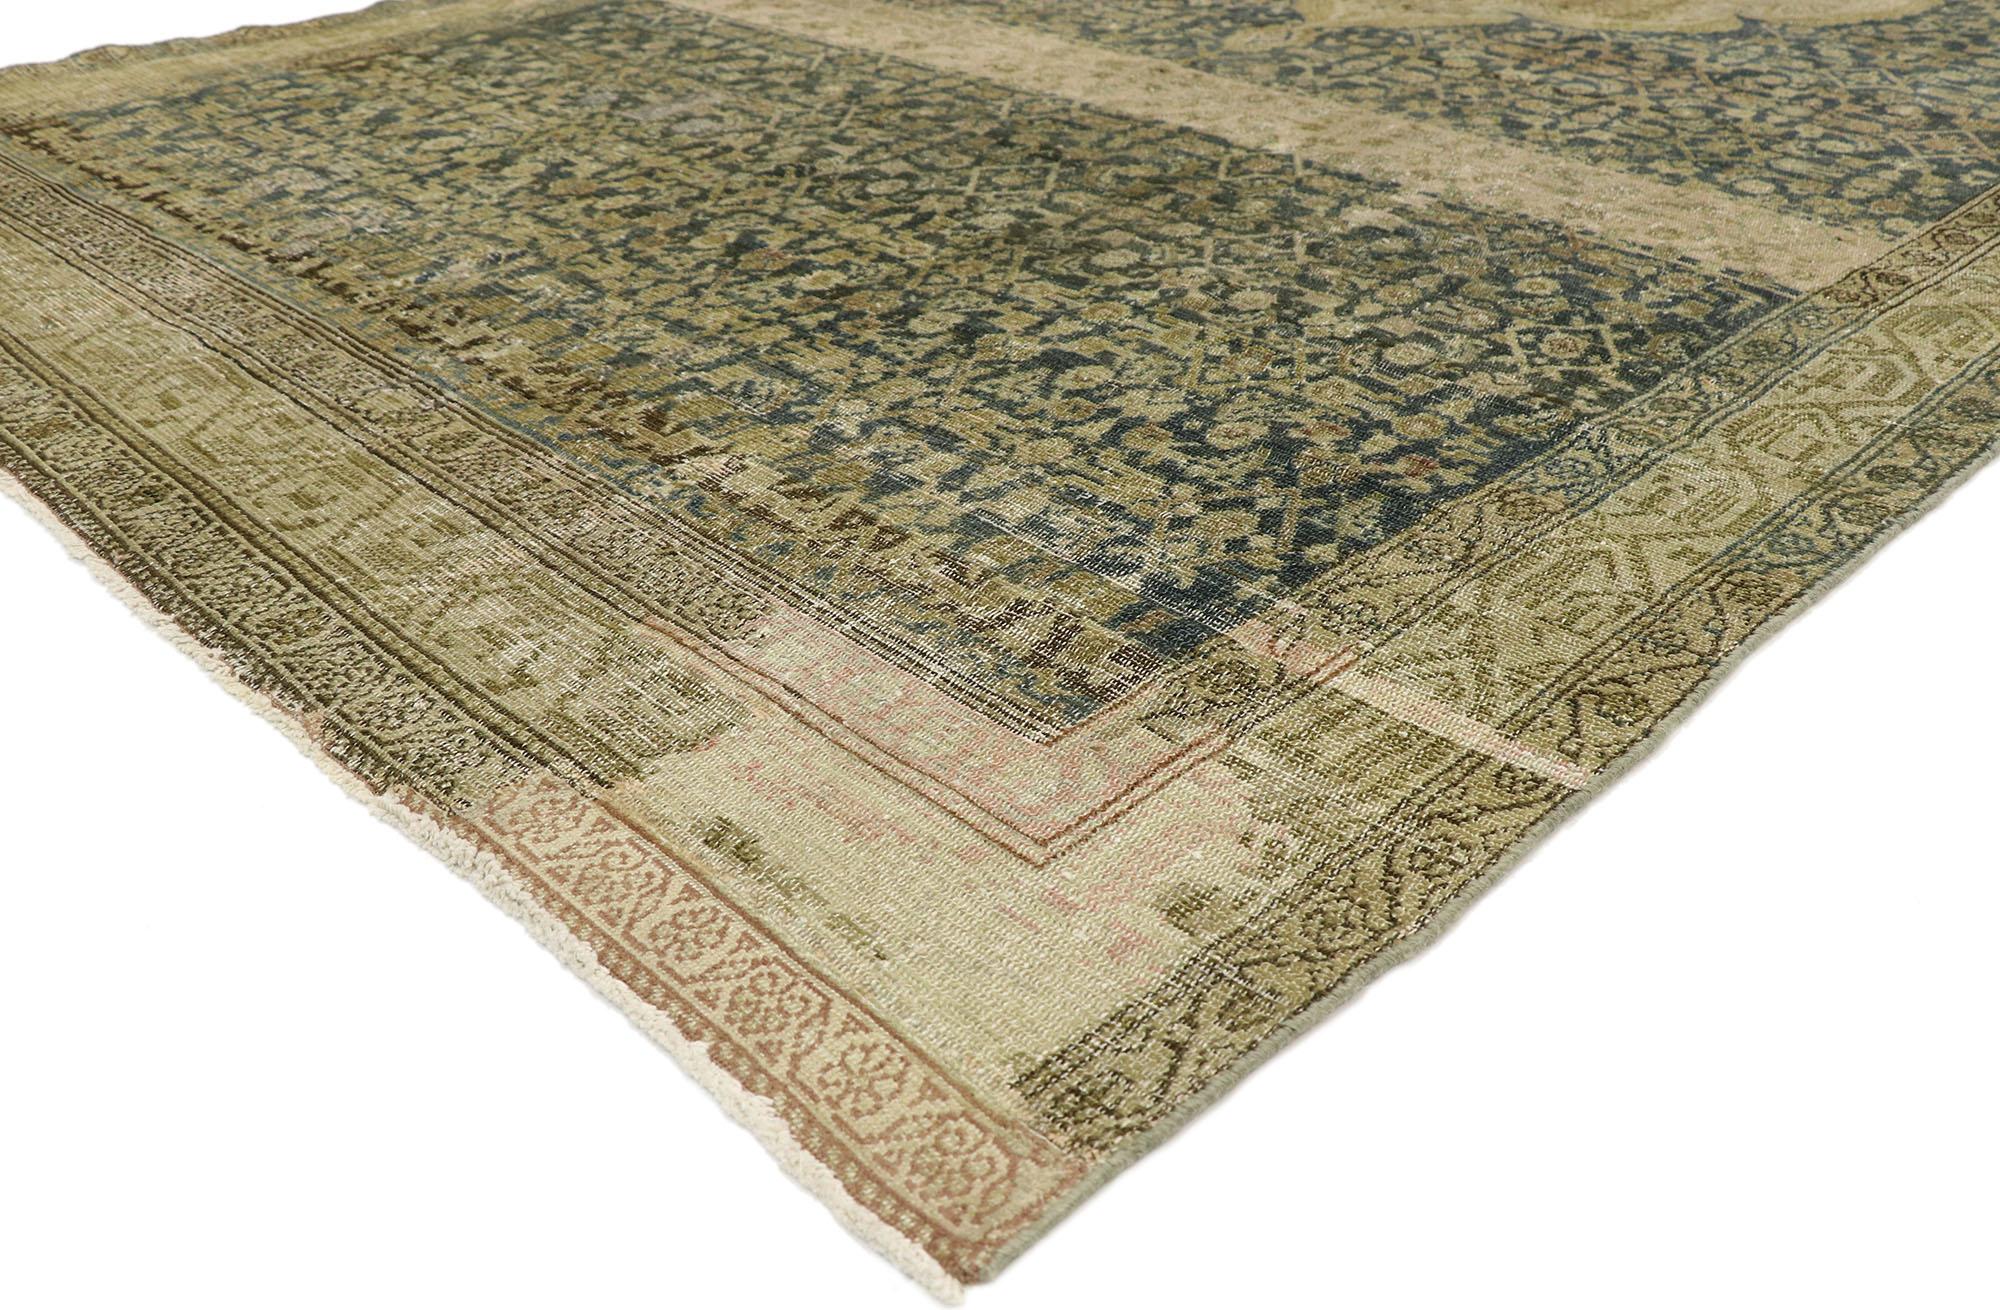 51881 Tapis antique Persan Malayer avec style rustique et moderne 06'10 x 15'04. Avec ses couleurs adoucies par le temps et sa beauté sauvage, ce tapis Persan Malayer ancien en laine nouée à la main est une vision captivante de la beauté tissée. Le